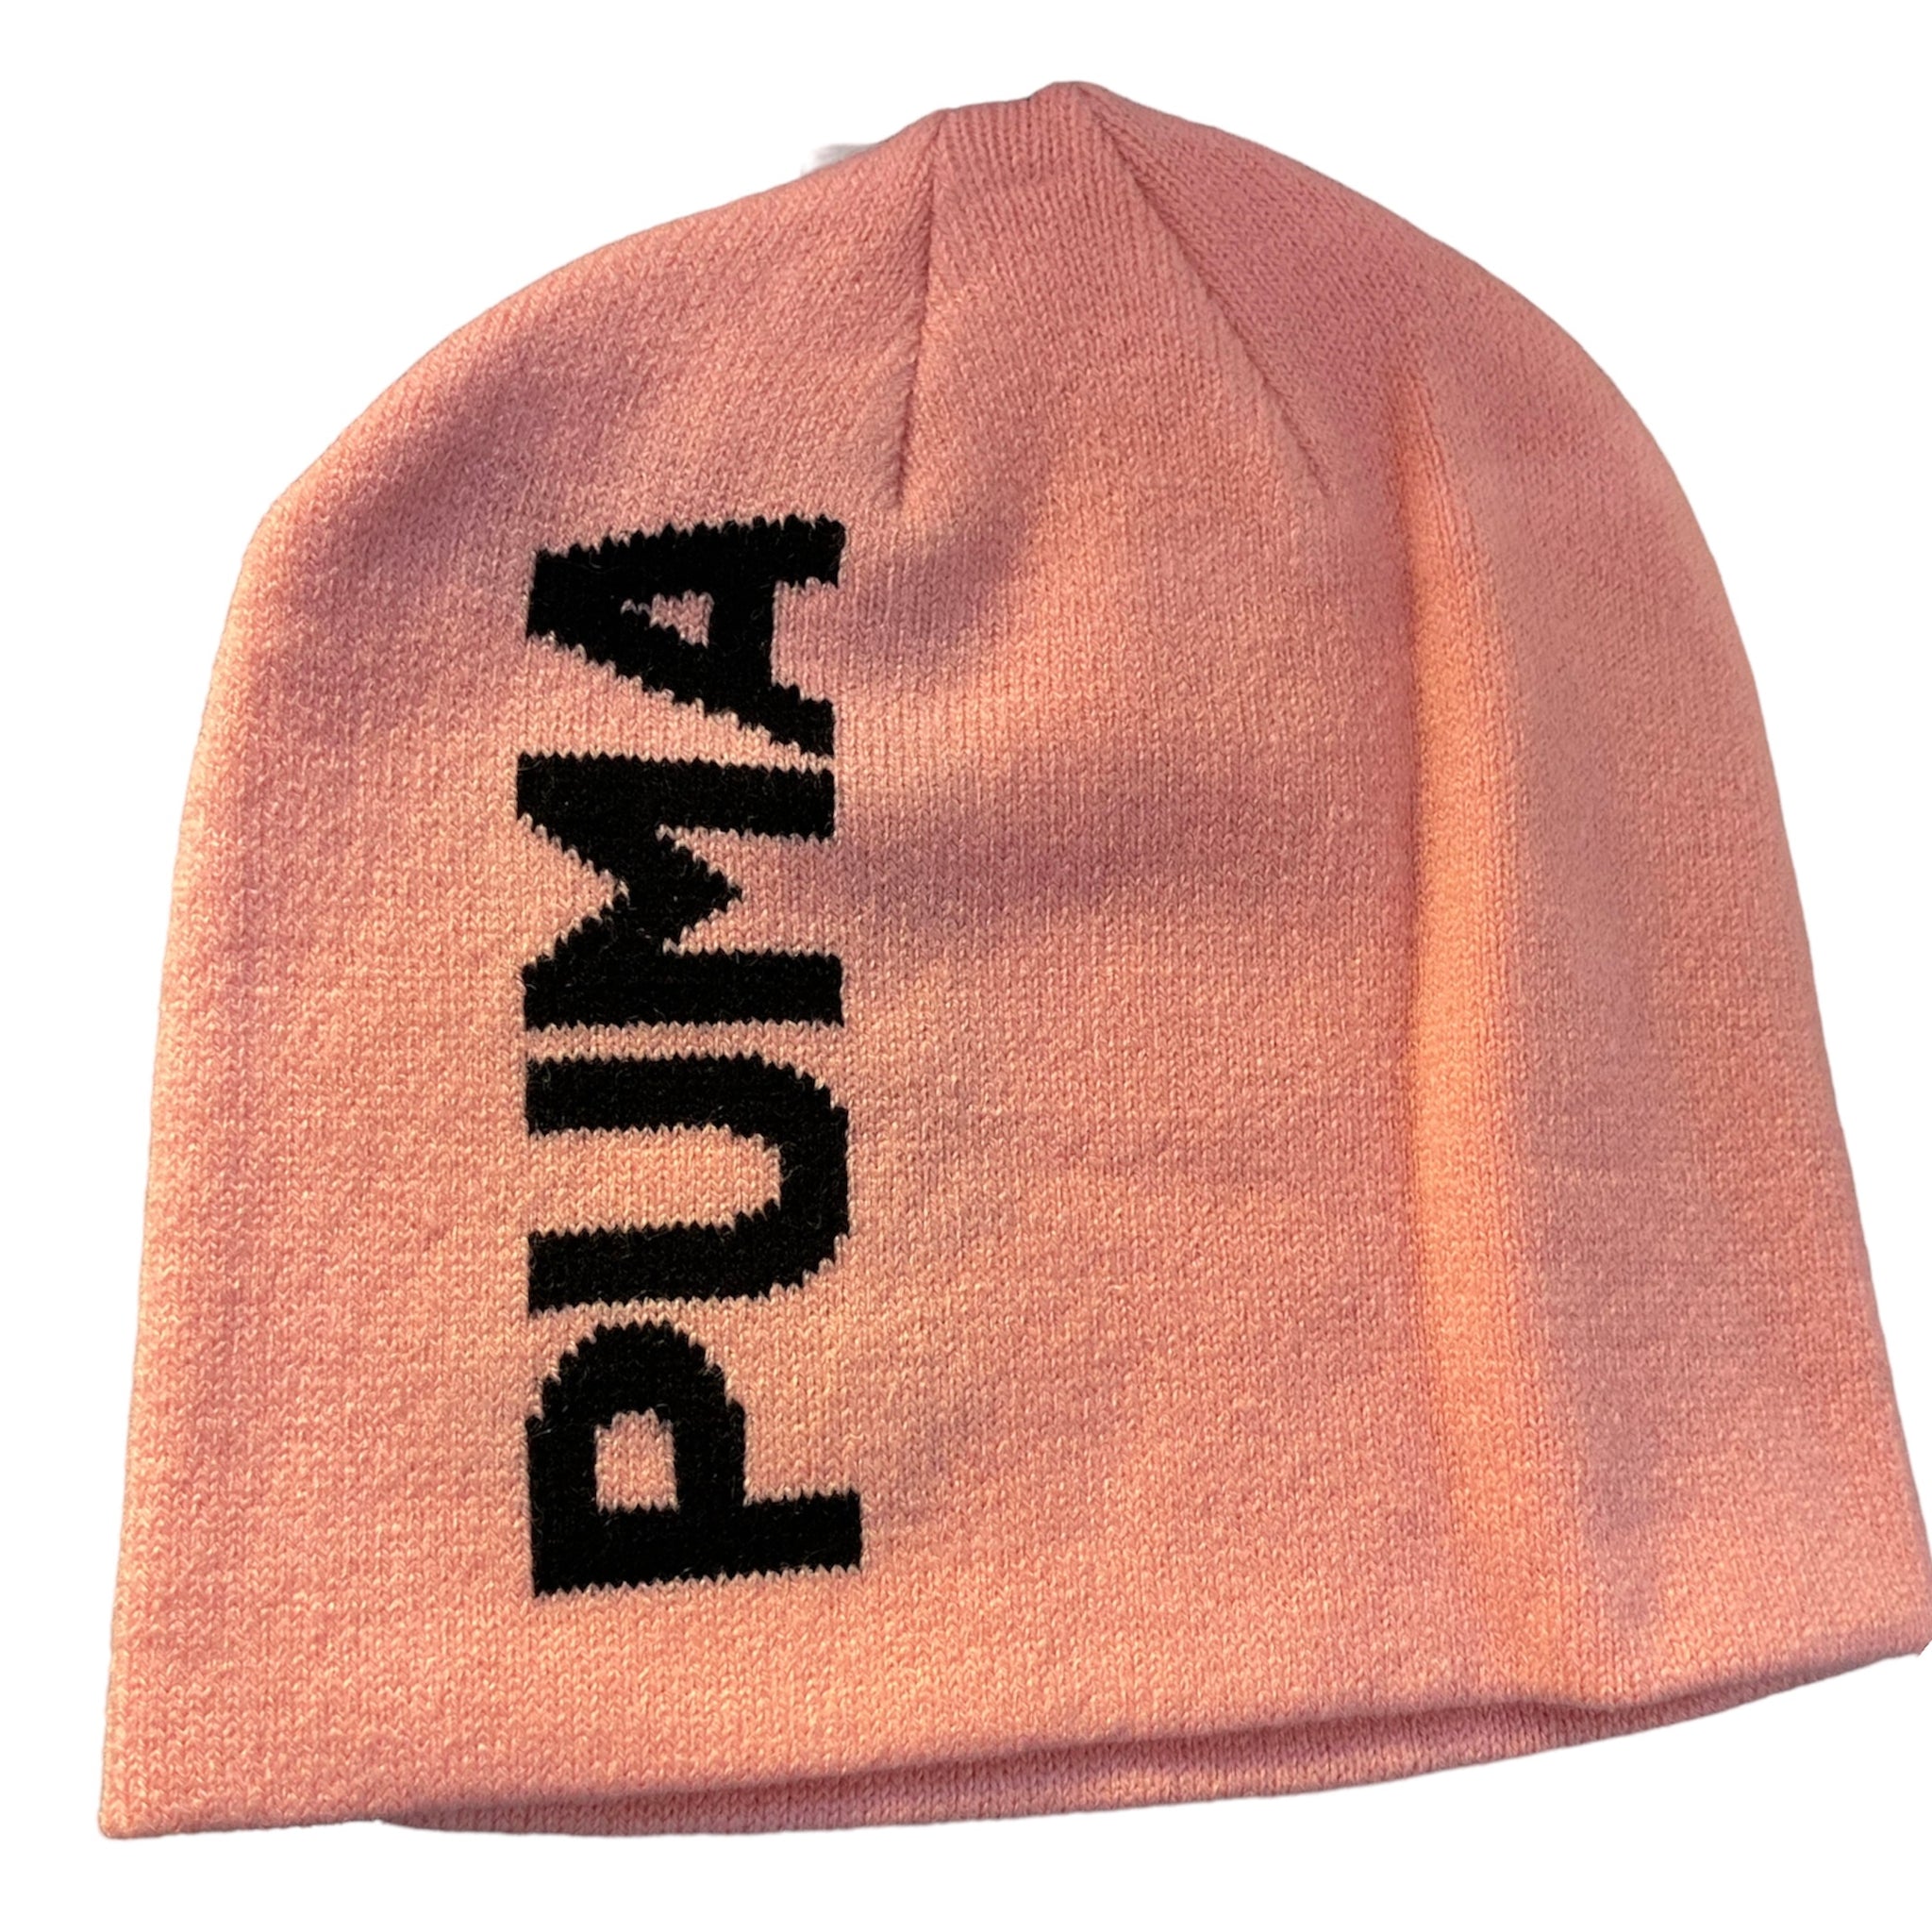 Puma cappello lana bambina 023461 04